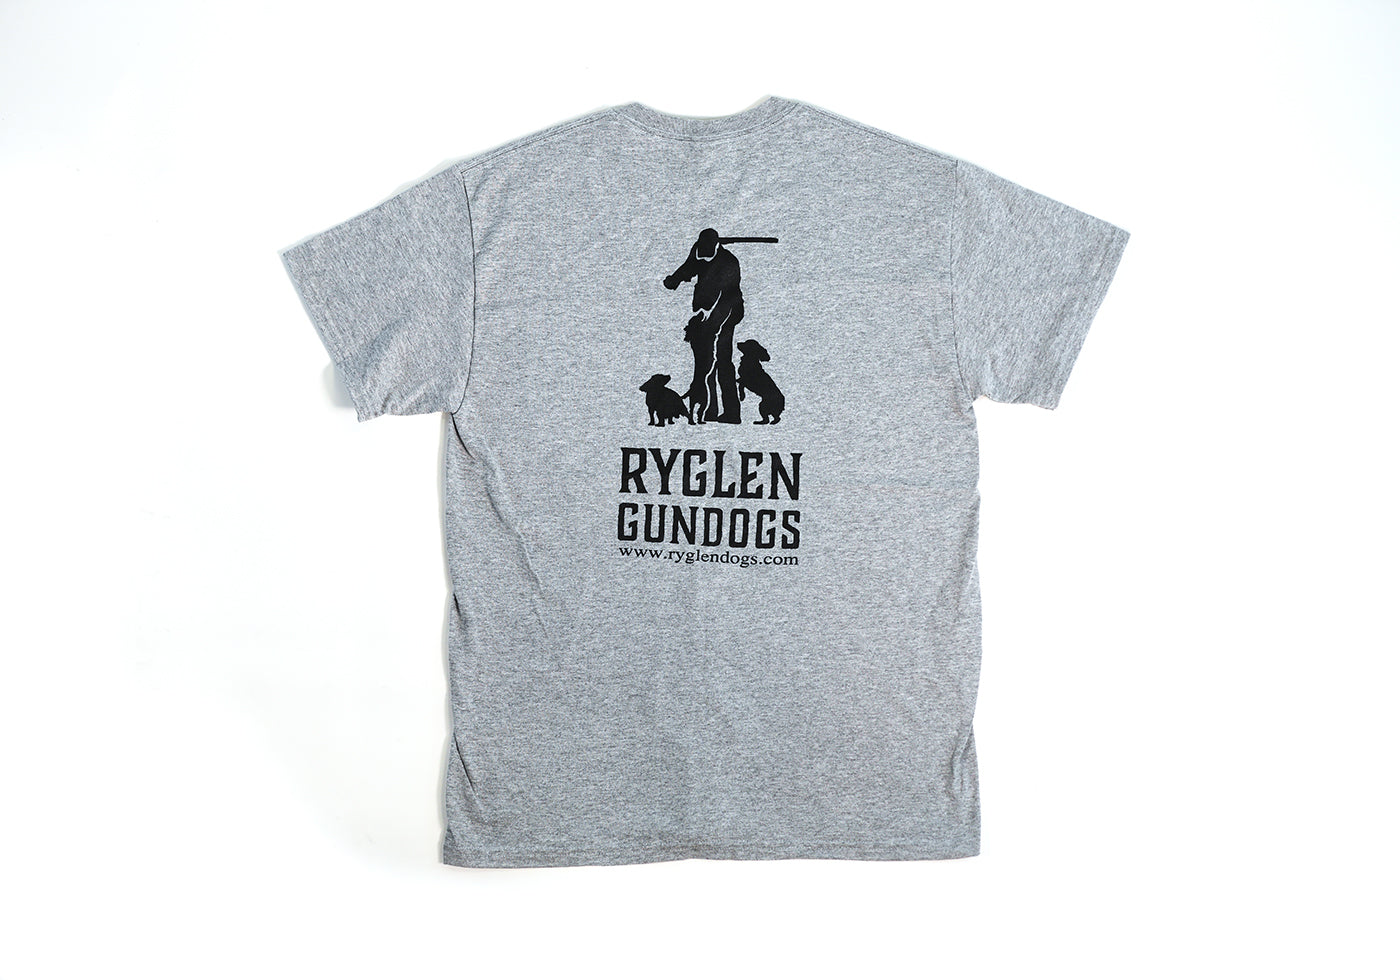 Ryglen Yeti 30 oz Stainless with handle – Ryglen Gundogs Storefront